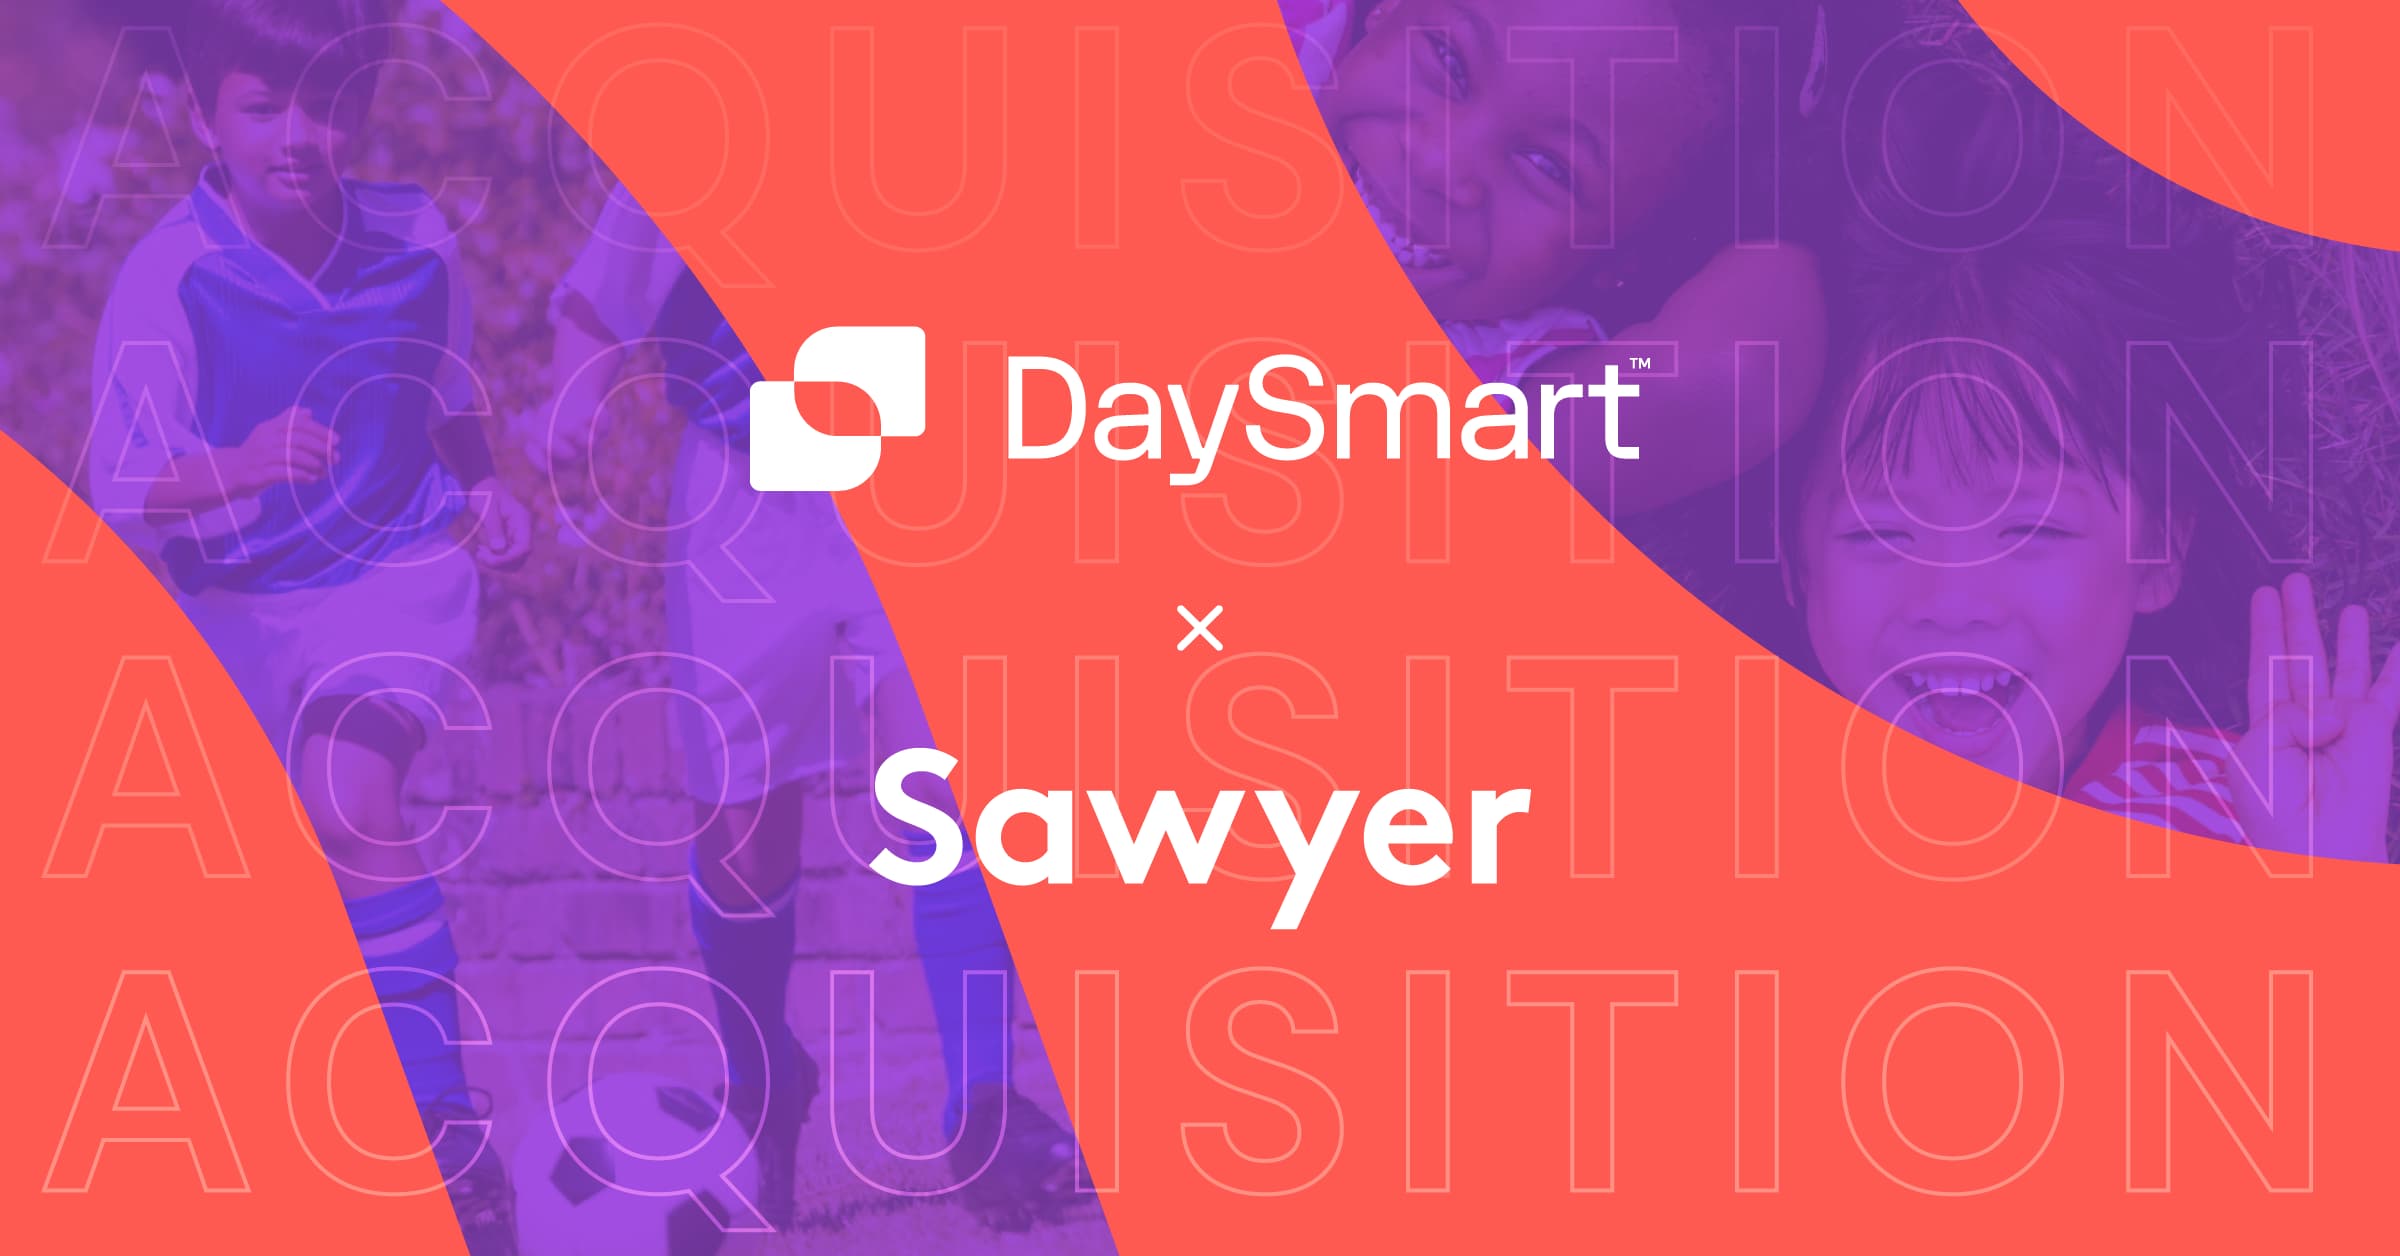 DaySmart Acquires Sawyer - DaySmart